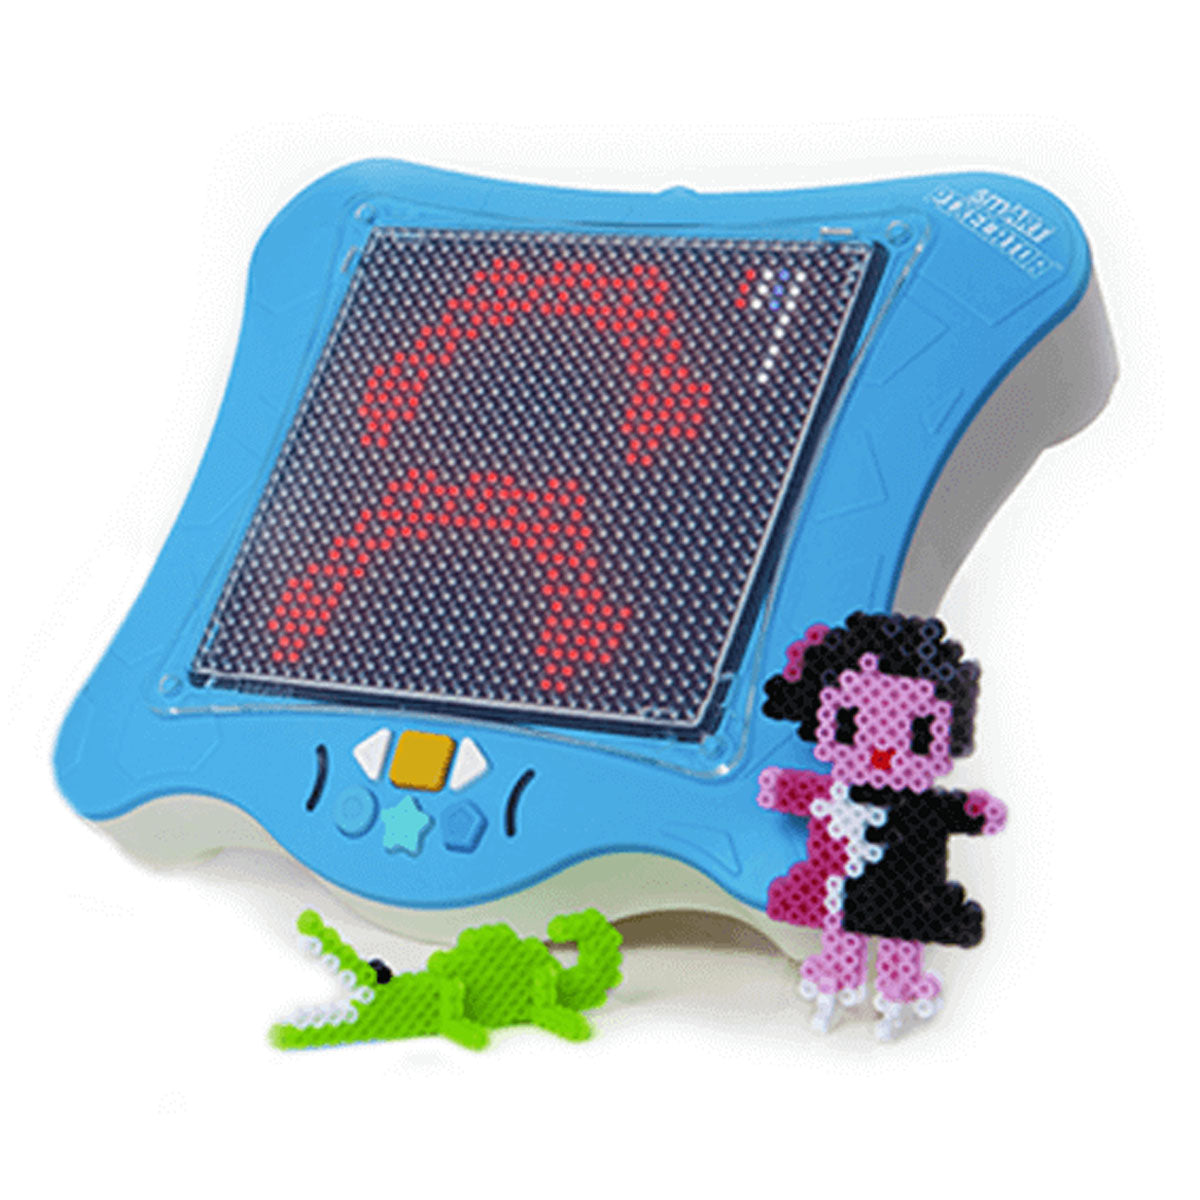 smART Pixelator™ - Small Bead Set B – Flycatcher Toys